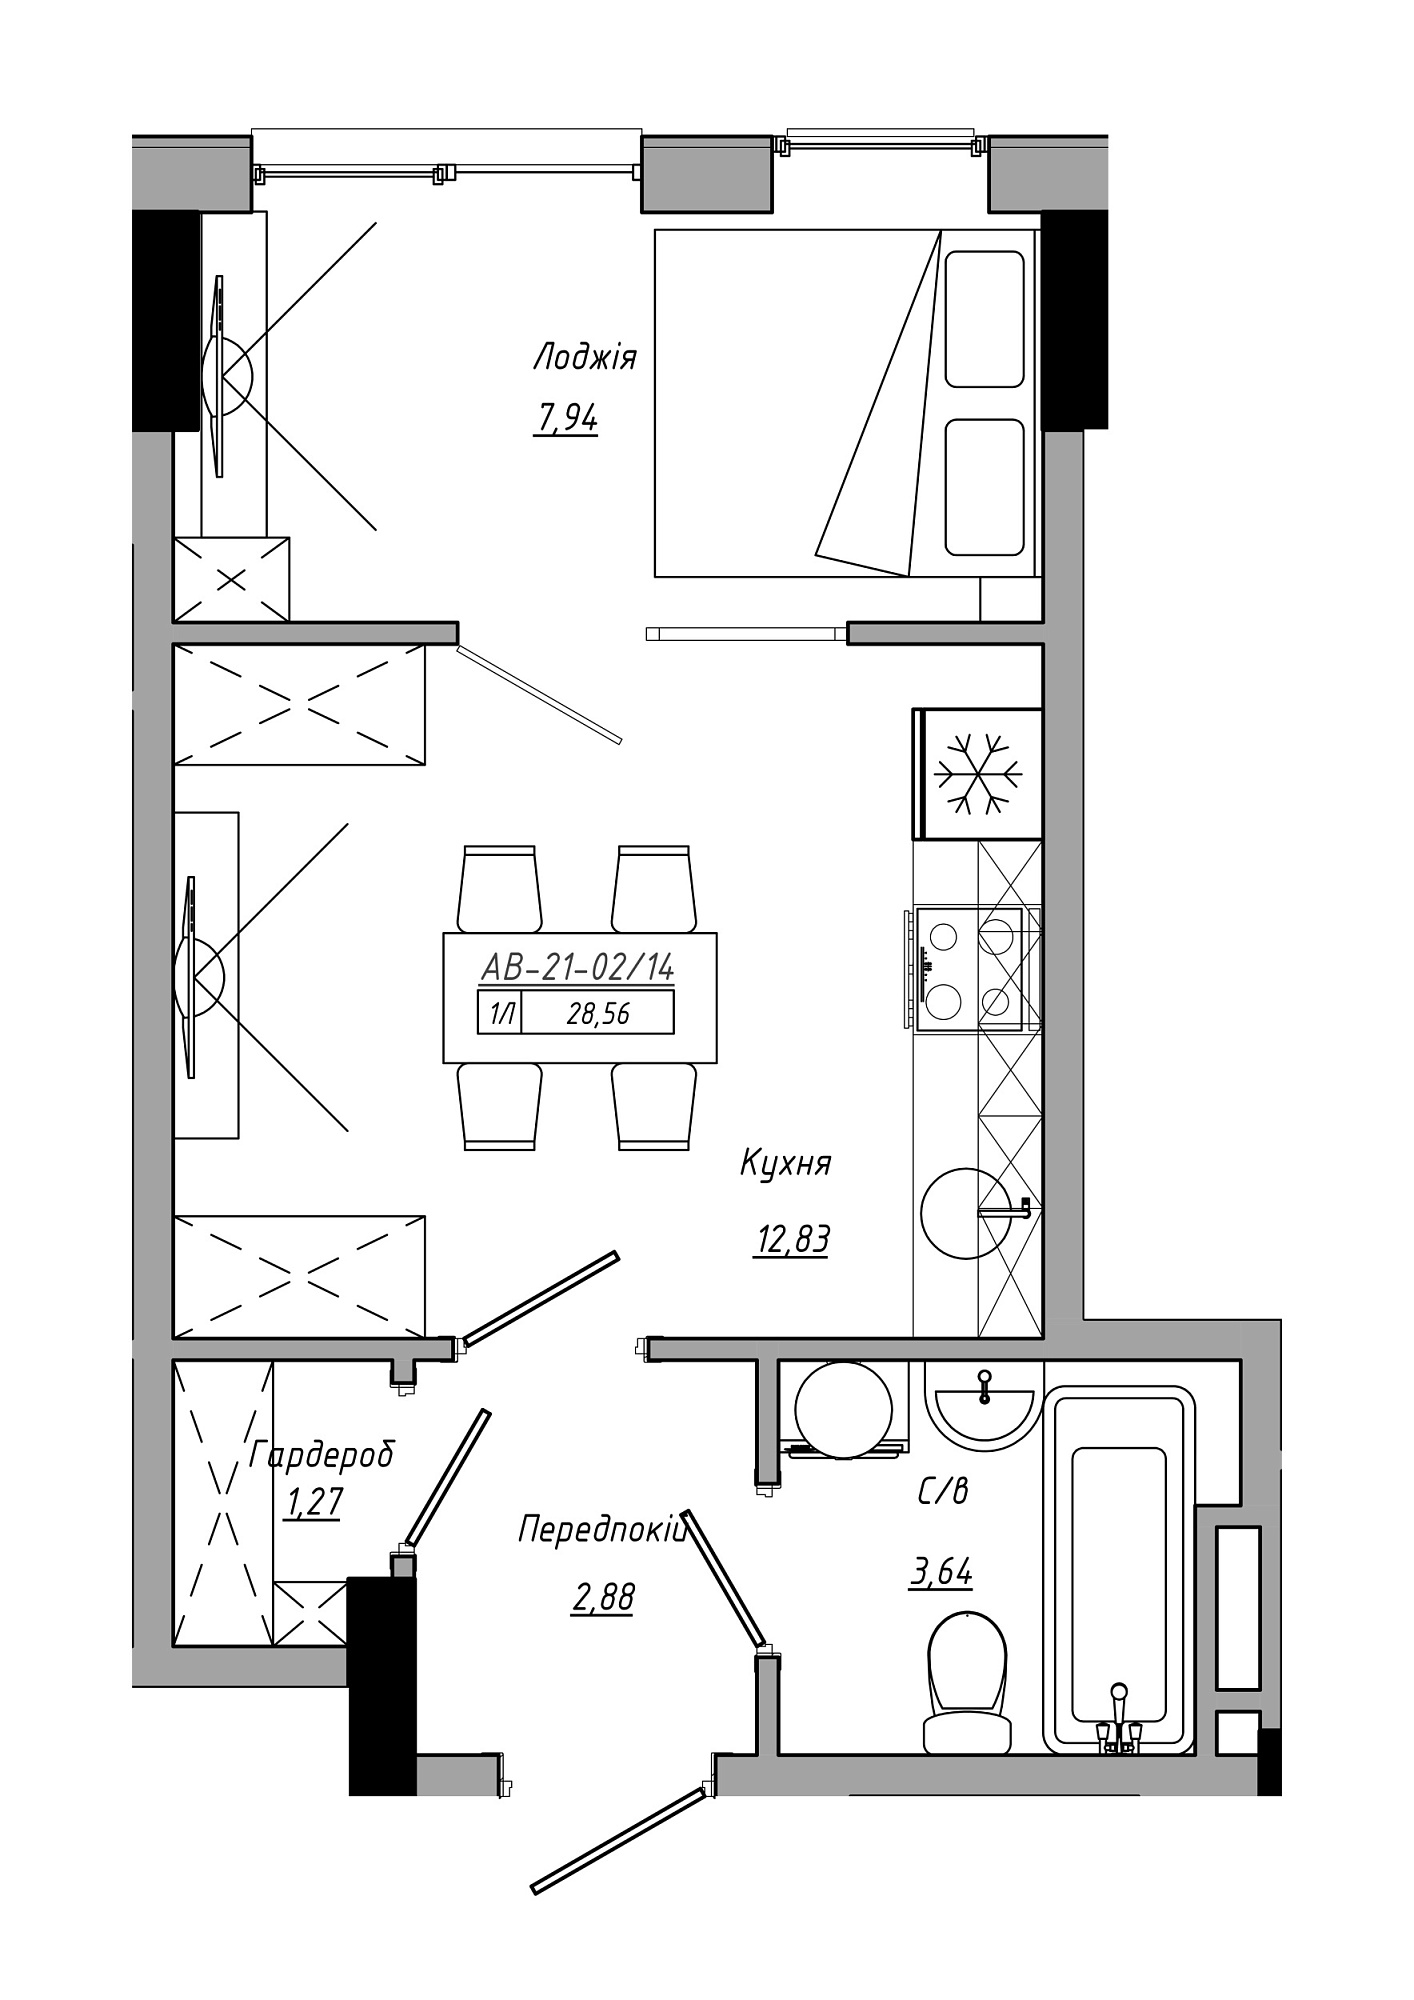 Планировка 1-к квартира площей 28.56м2, AB-21-02/00014.